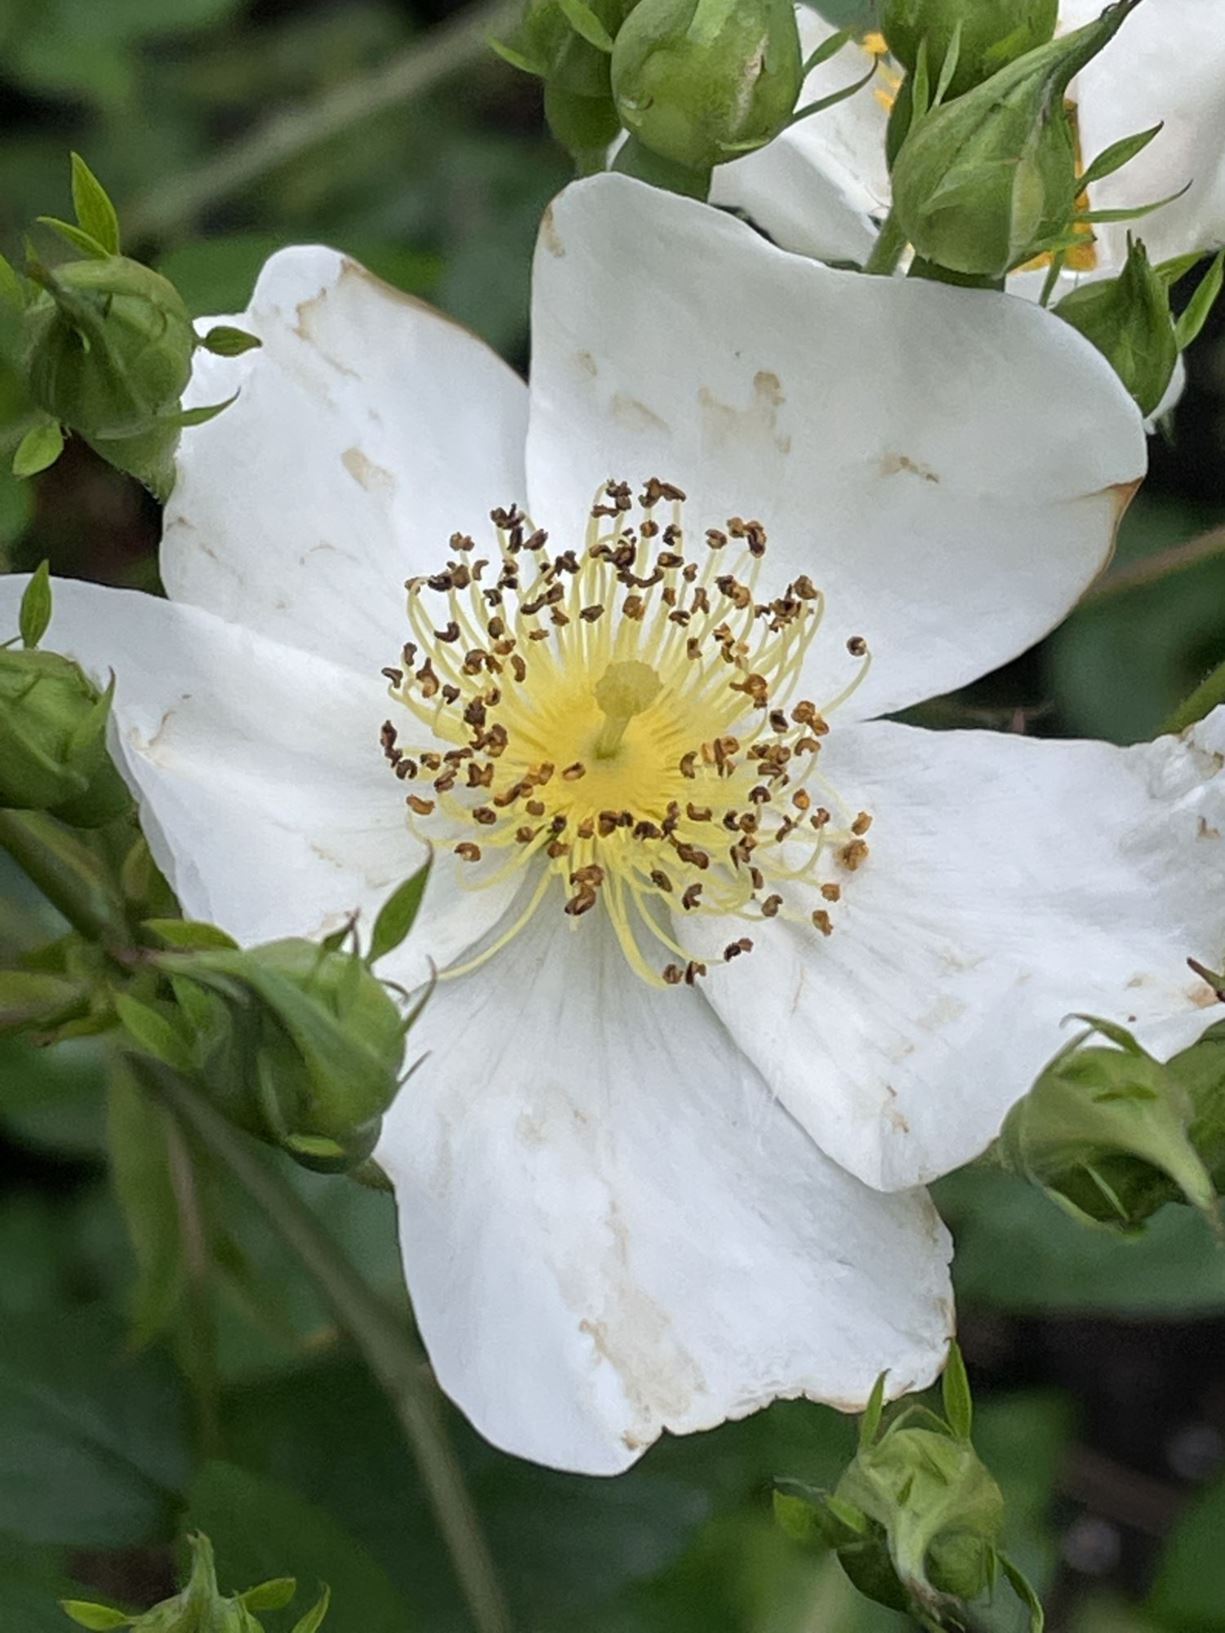 Rosa maximowicziana - 伞花蔷薇 san hua qiang wei